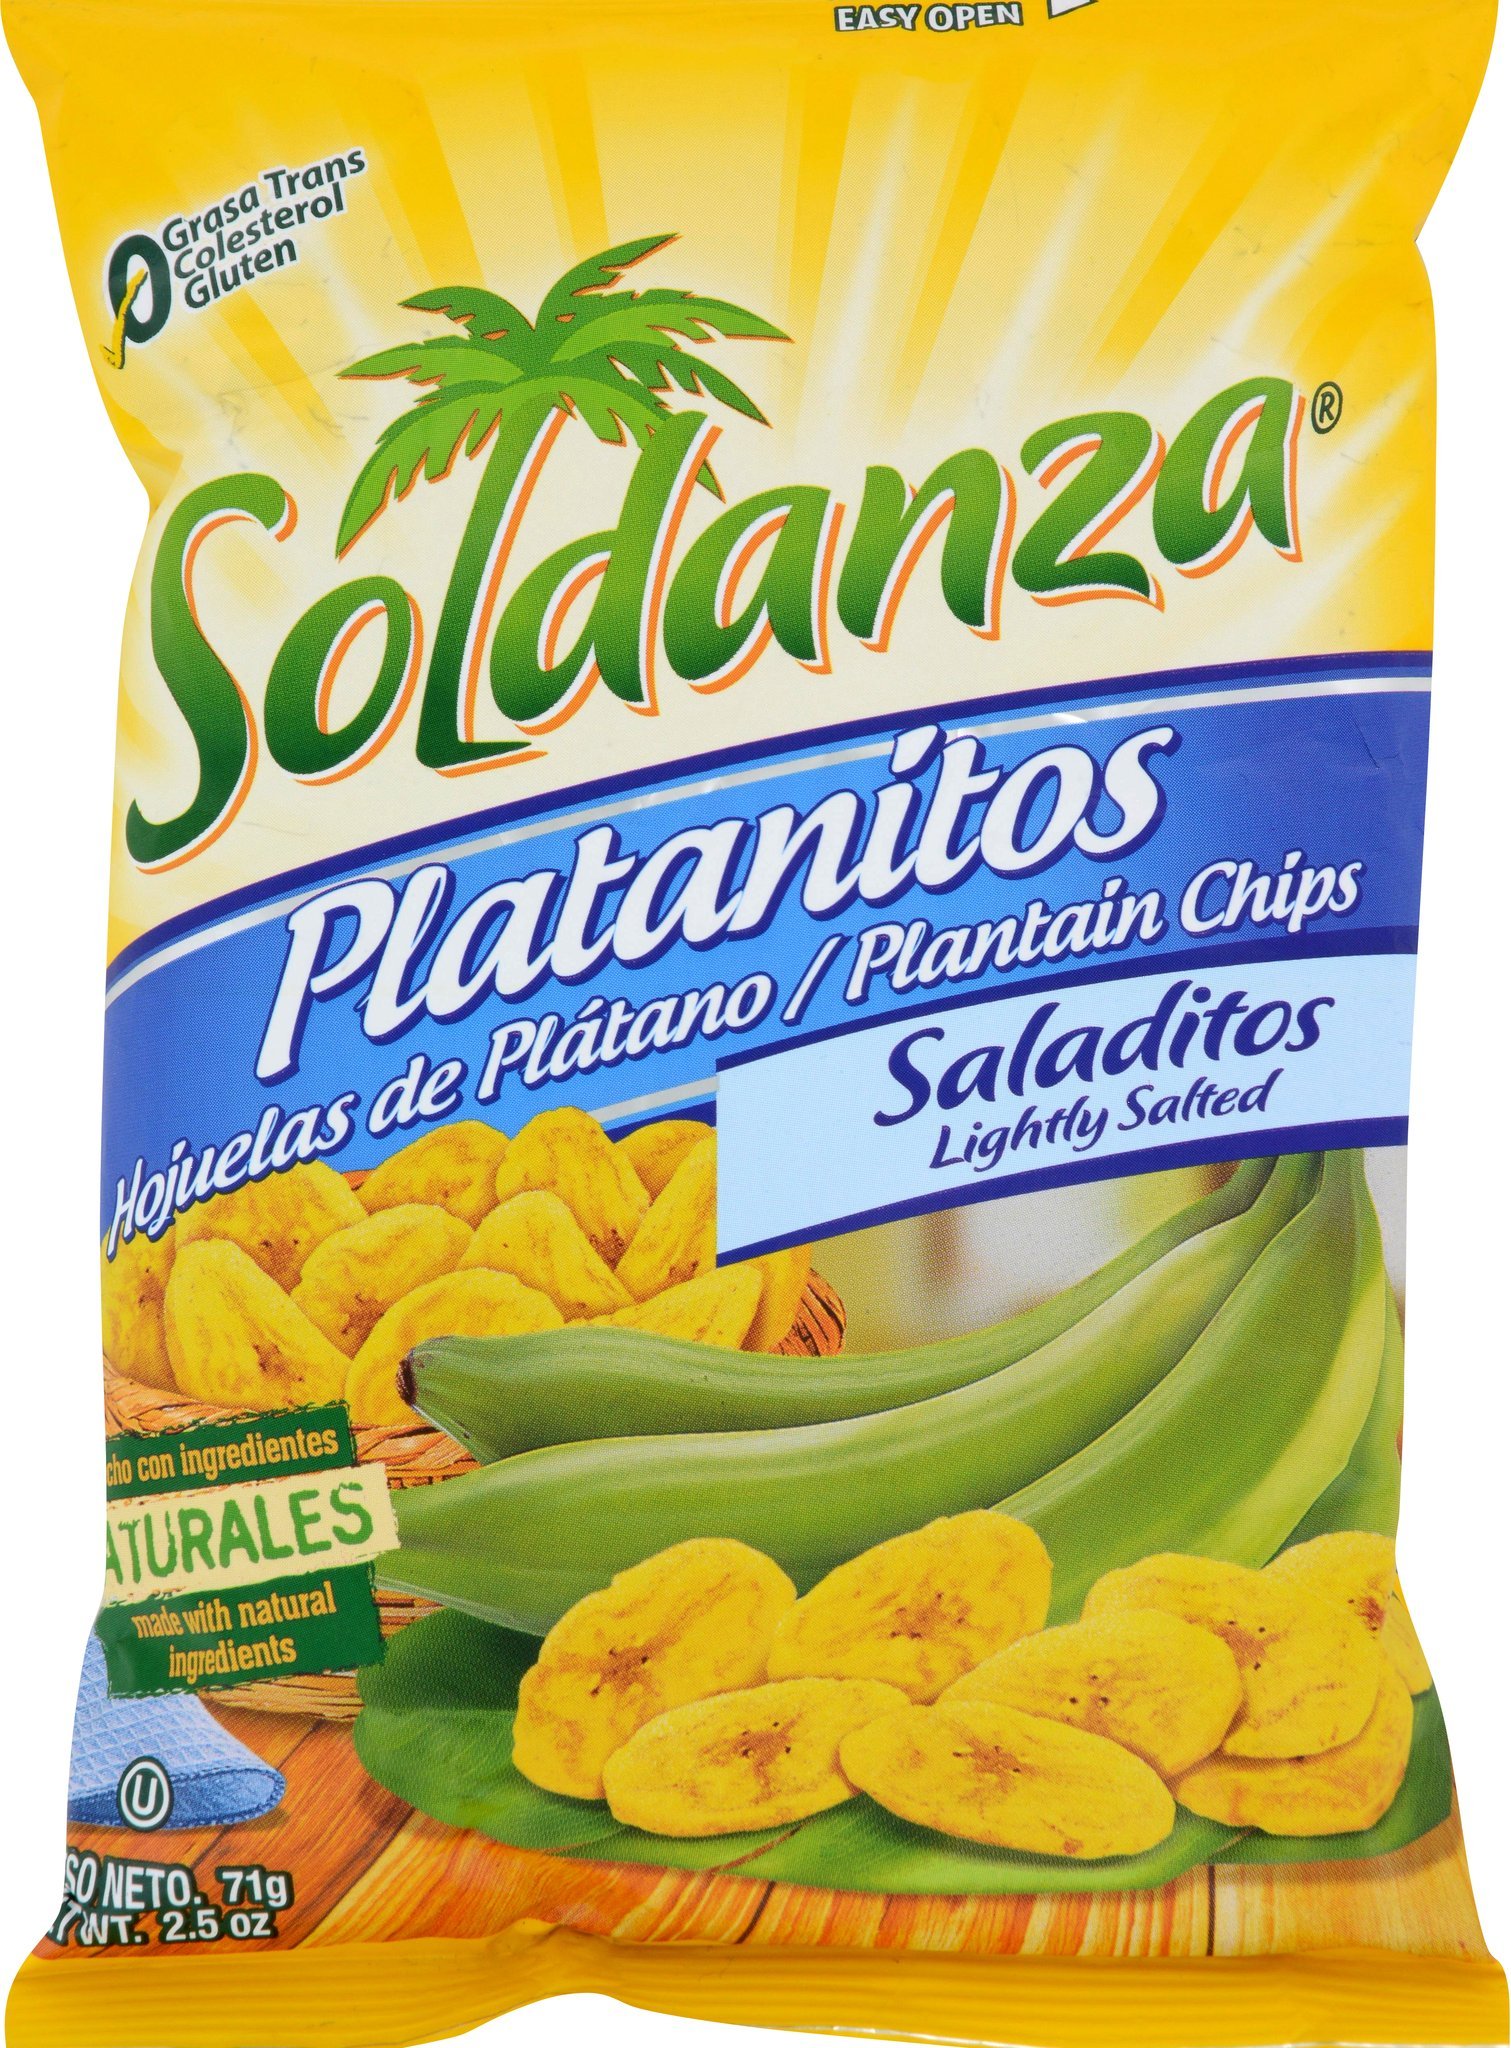 Soldanza Plaintain Chips